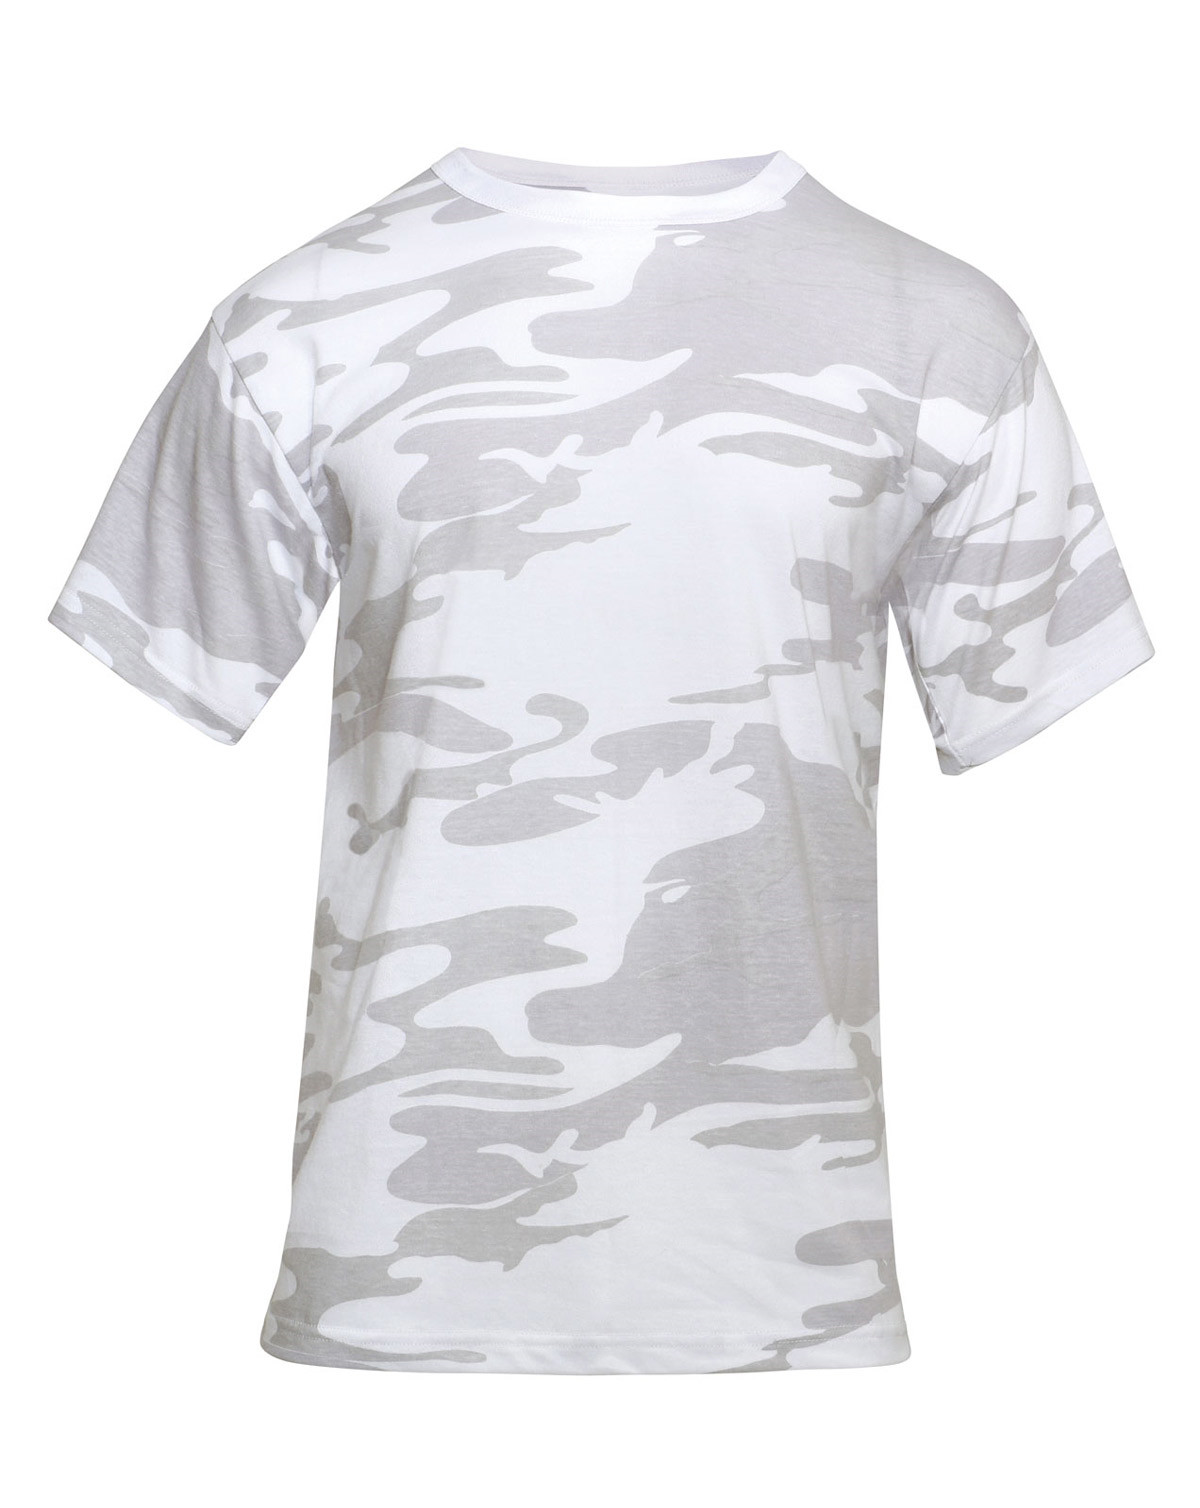 Rothco T-shirt - Mange Camouflager (Grå / Hvid, M)